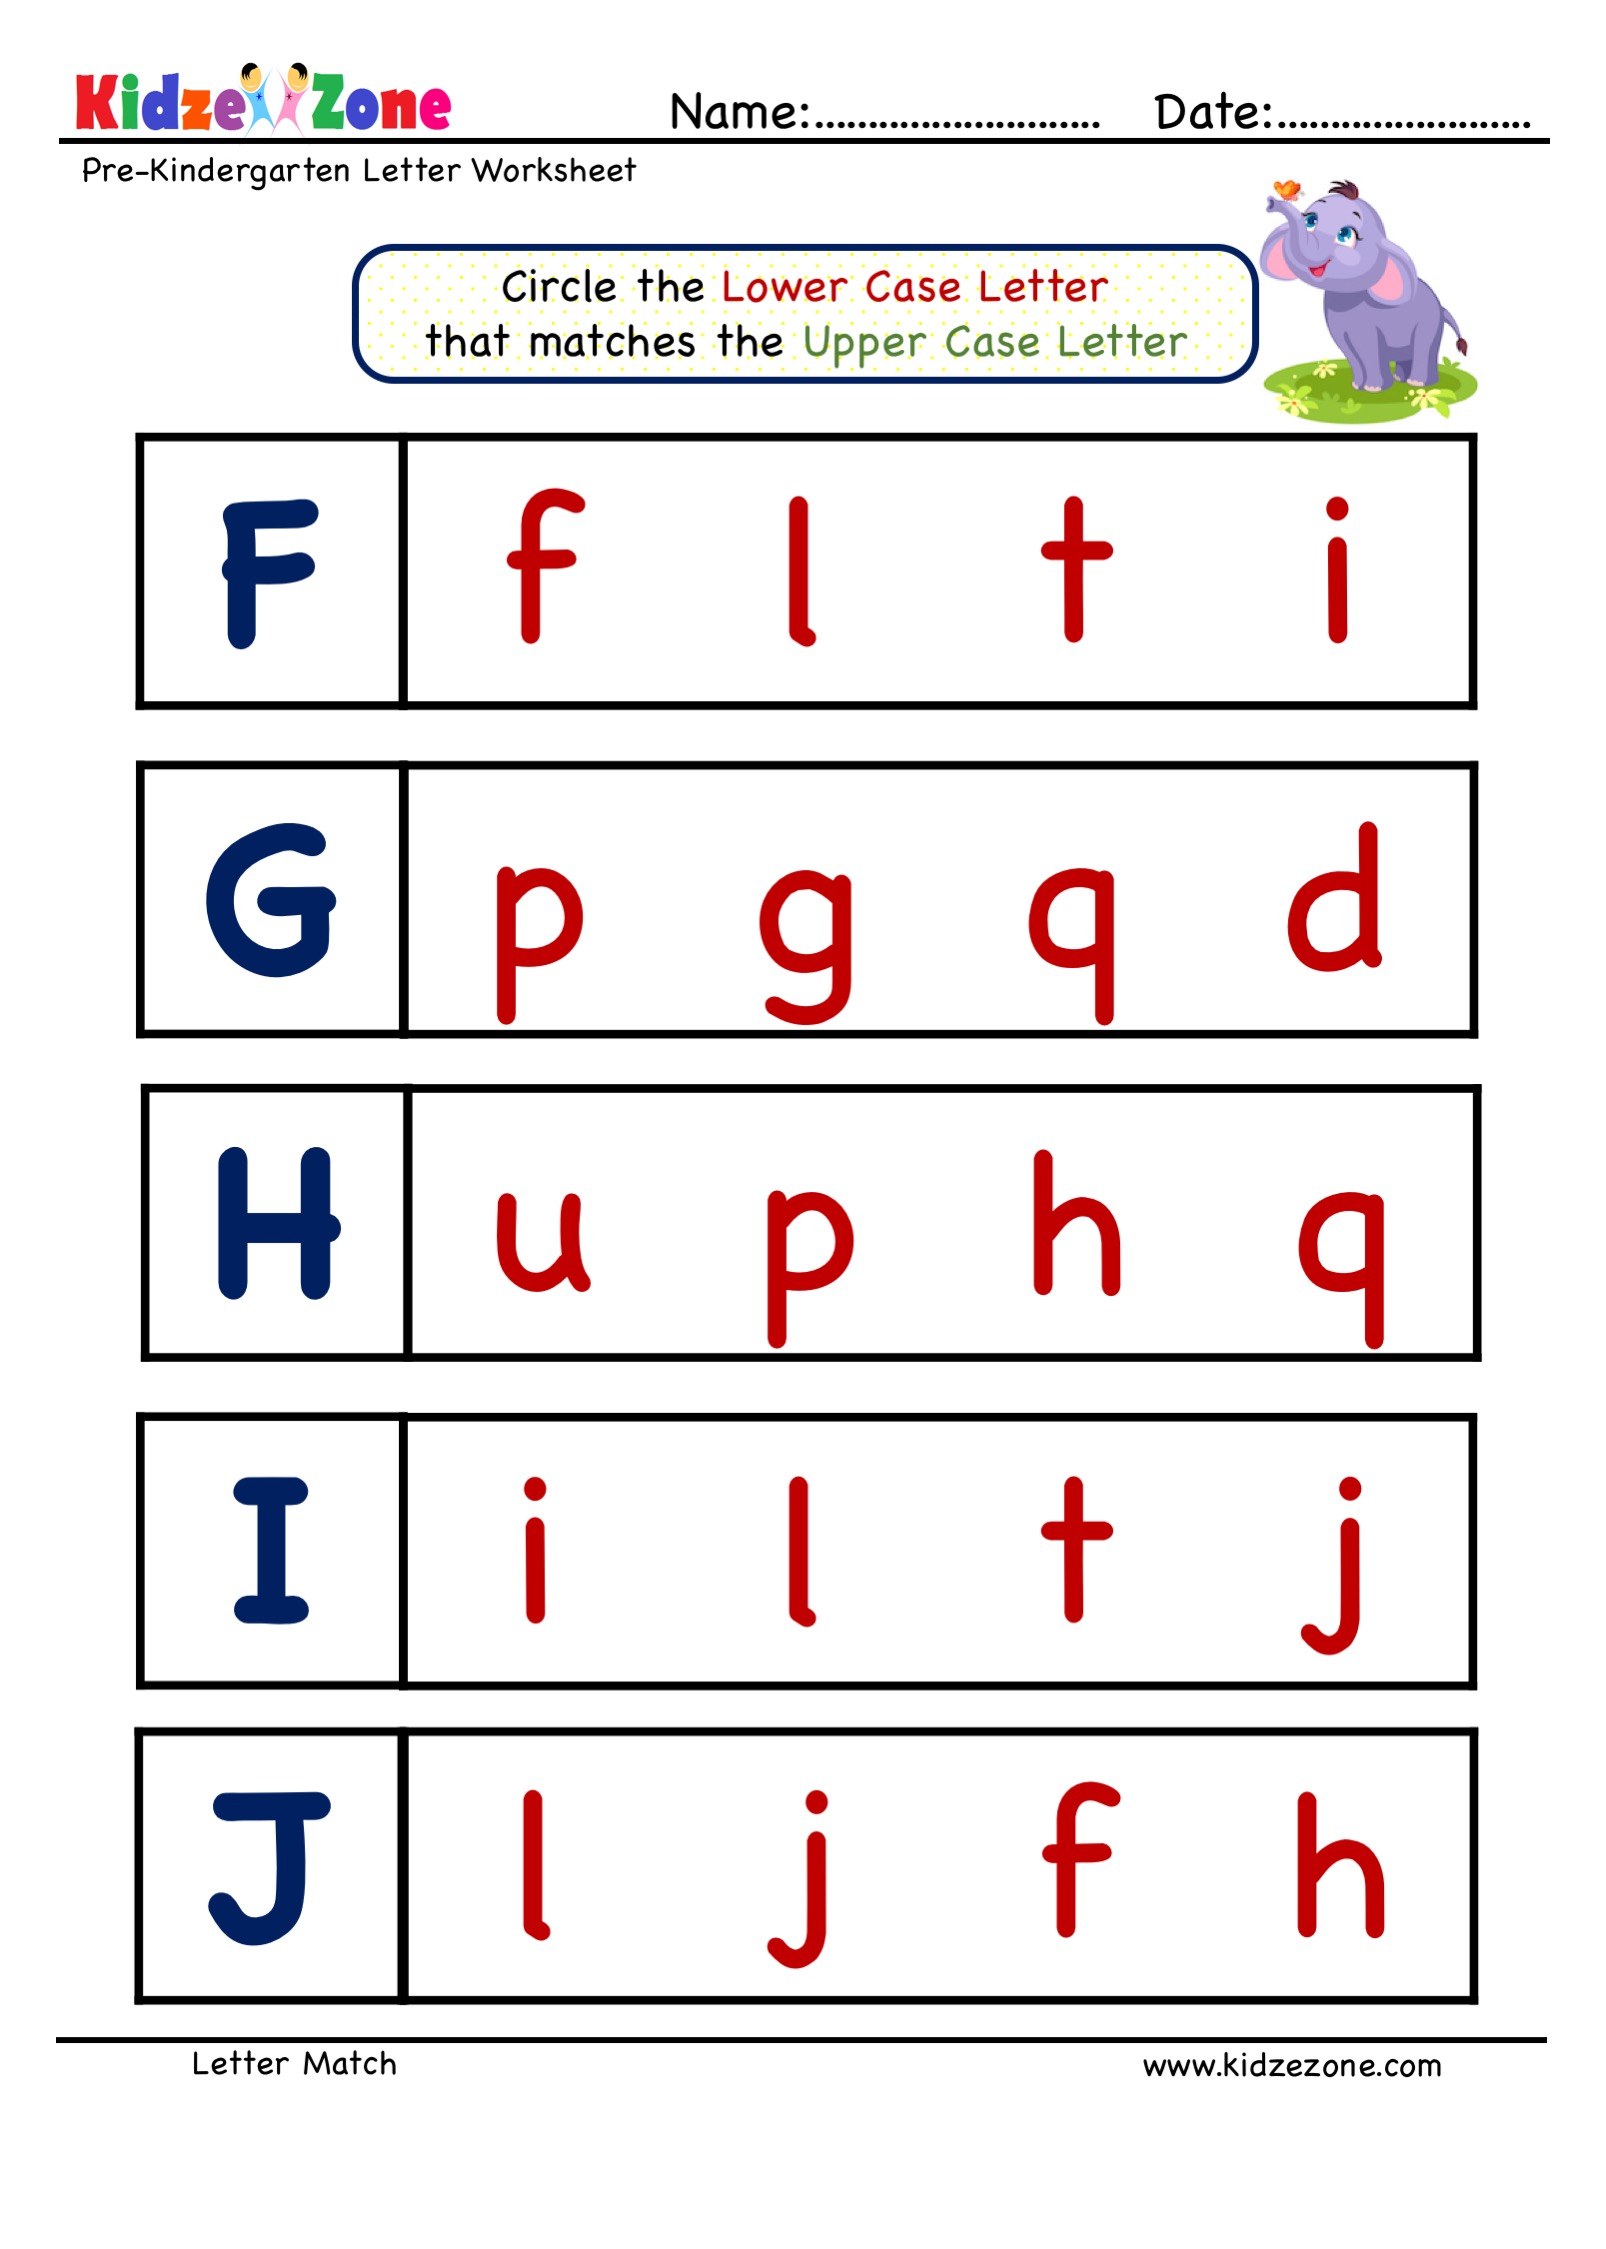 tracing-letter-g-worksheets-for-kindergarten-letter-worksheets-learning-worksheet-sound-english